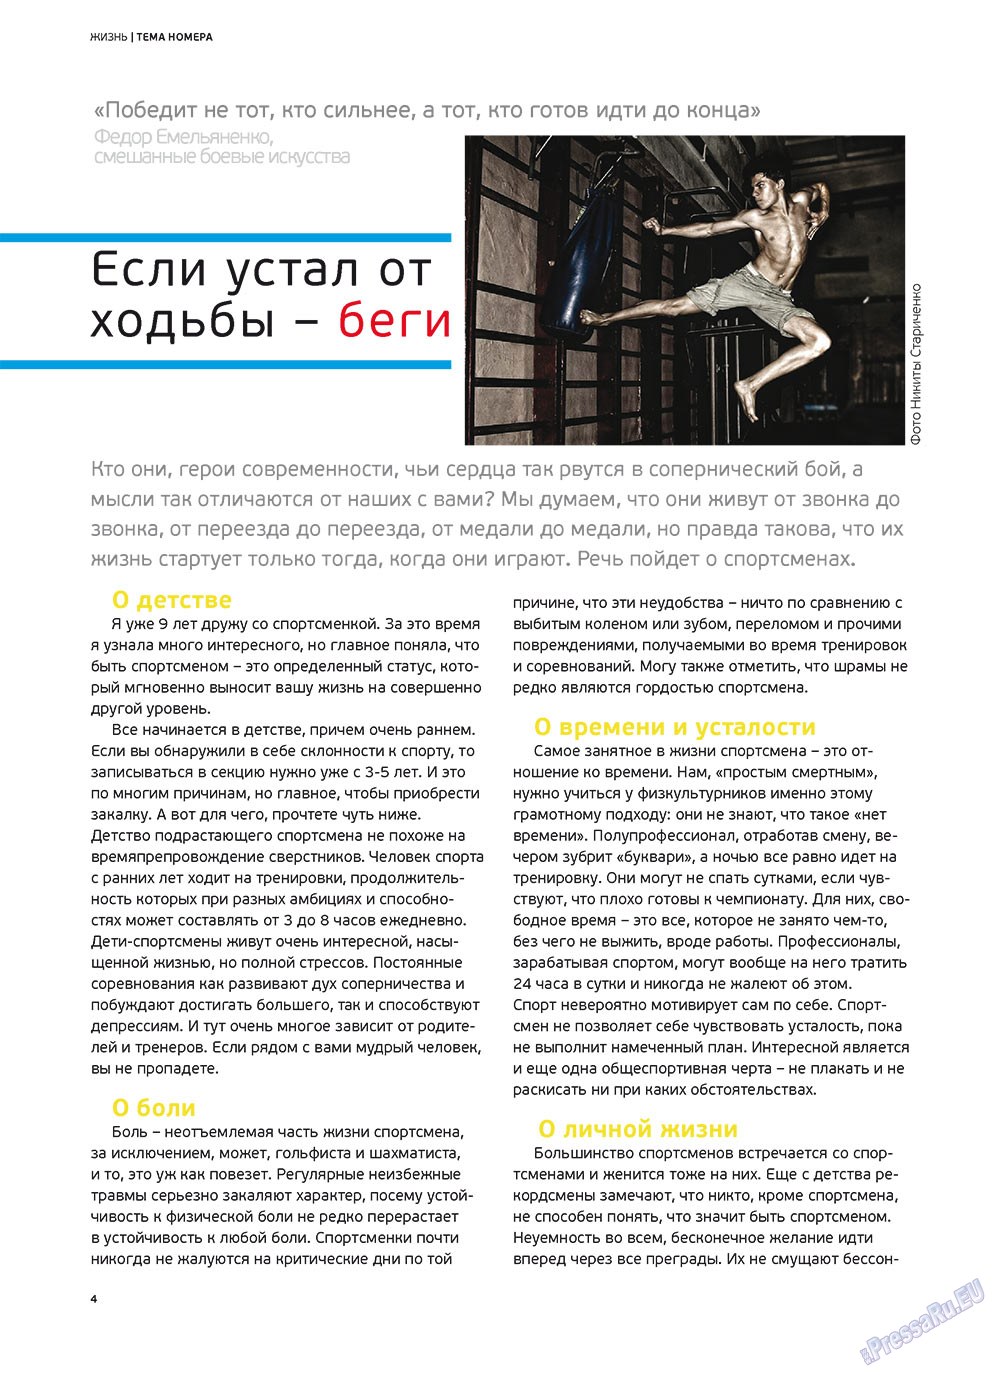 Артек, журнал. 2012 №2 стр.6